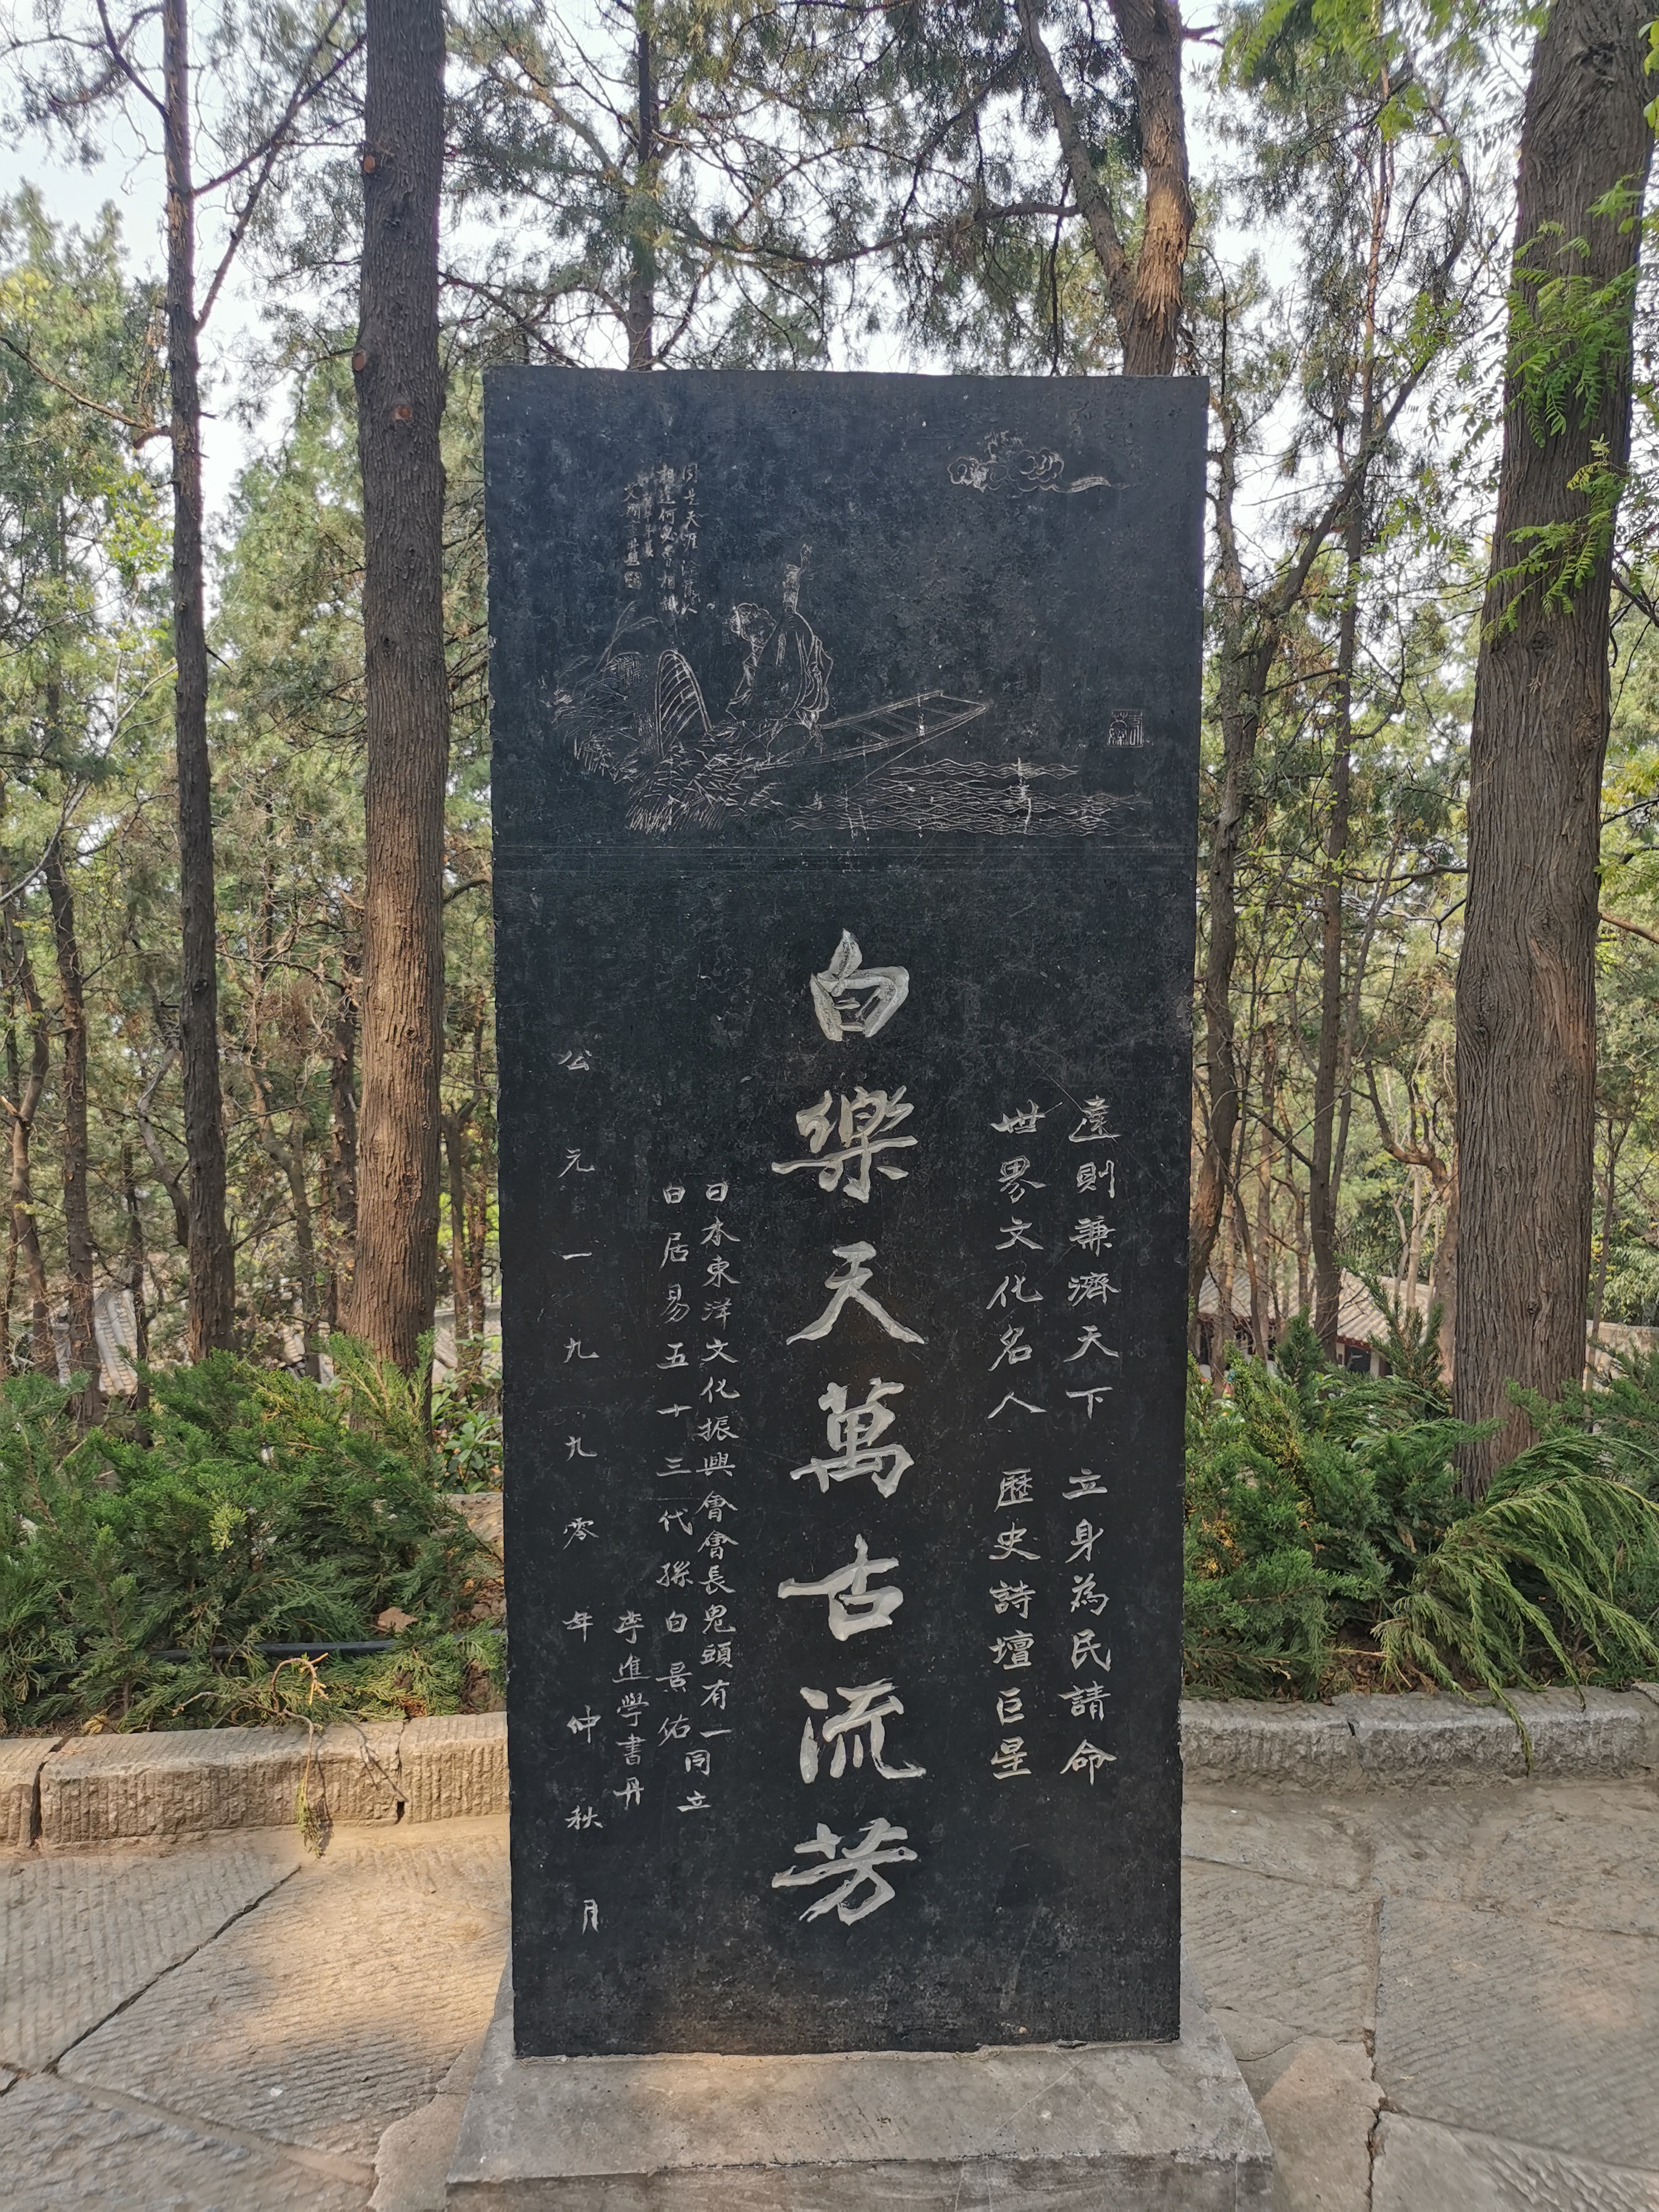 白居易墓园中,日本友人立的纪念石碑